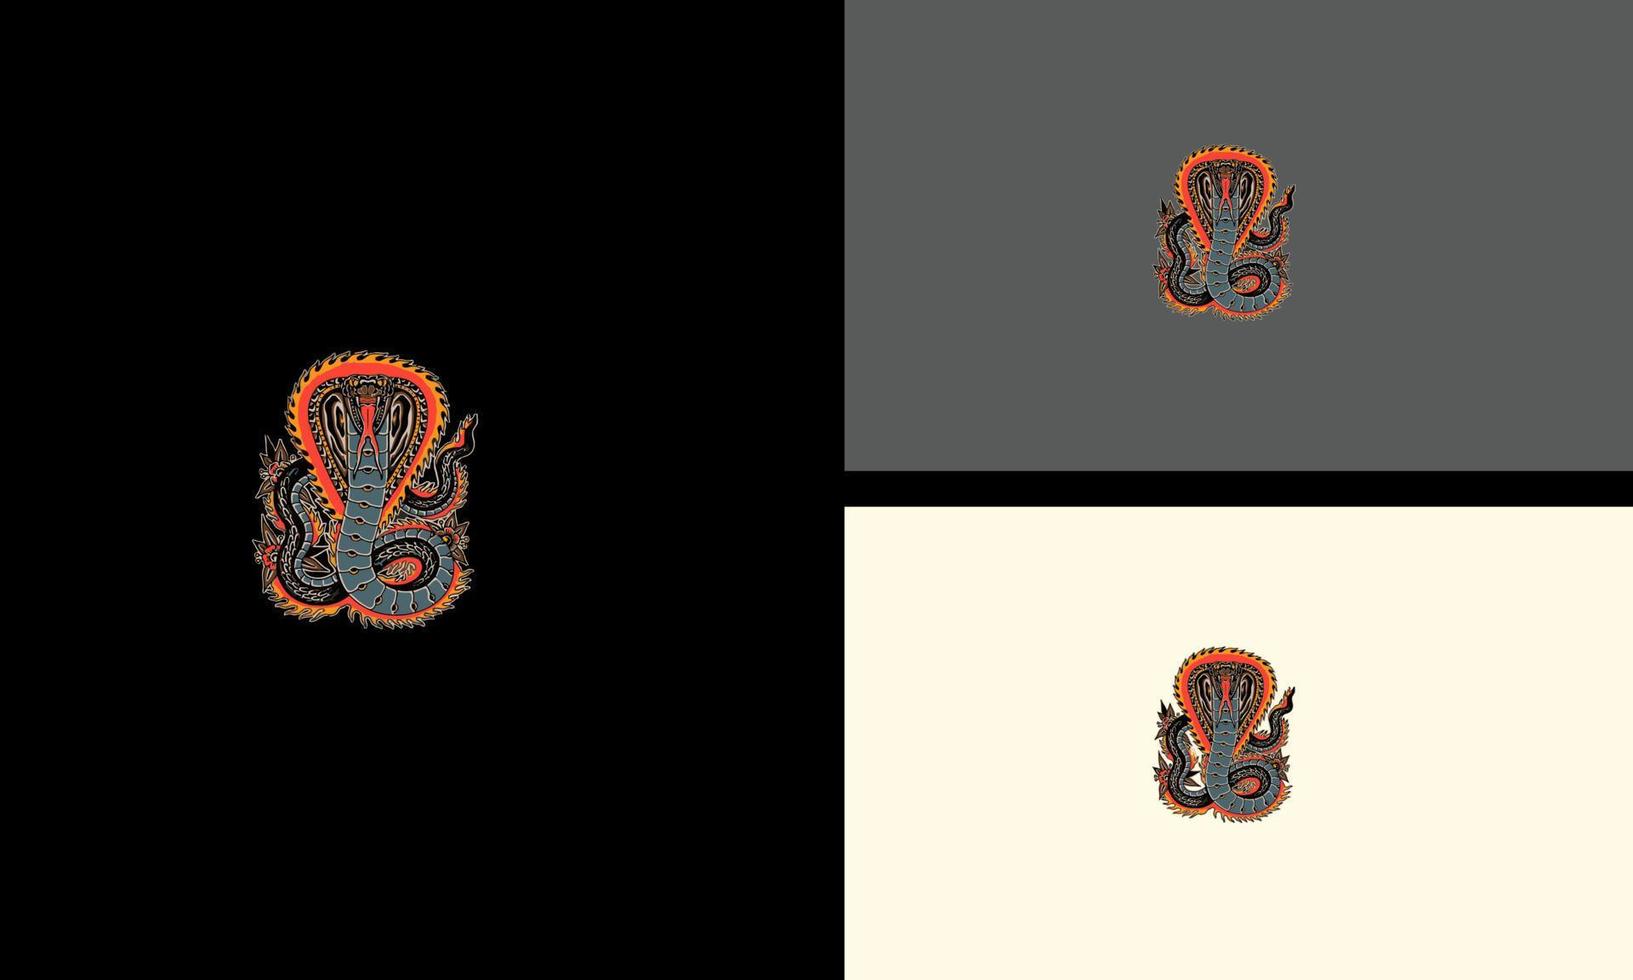 king cobra with flames vector illustration artwork design